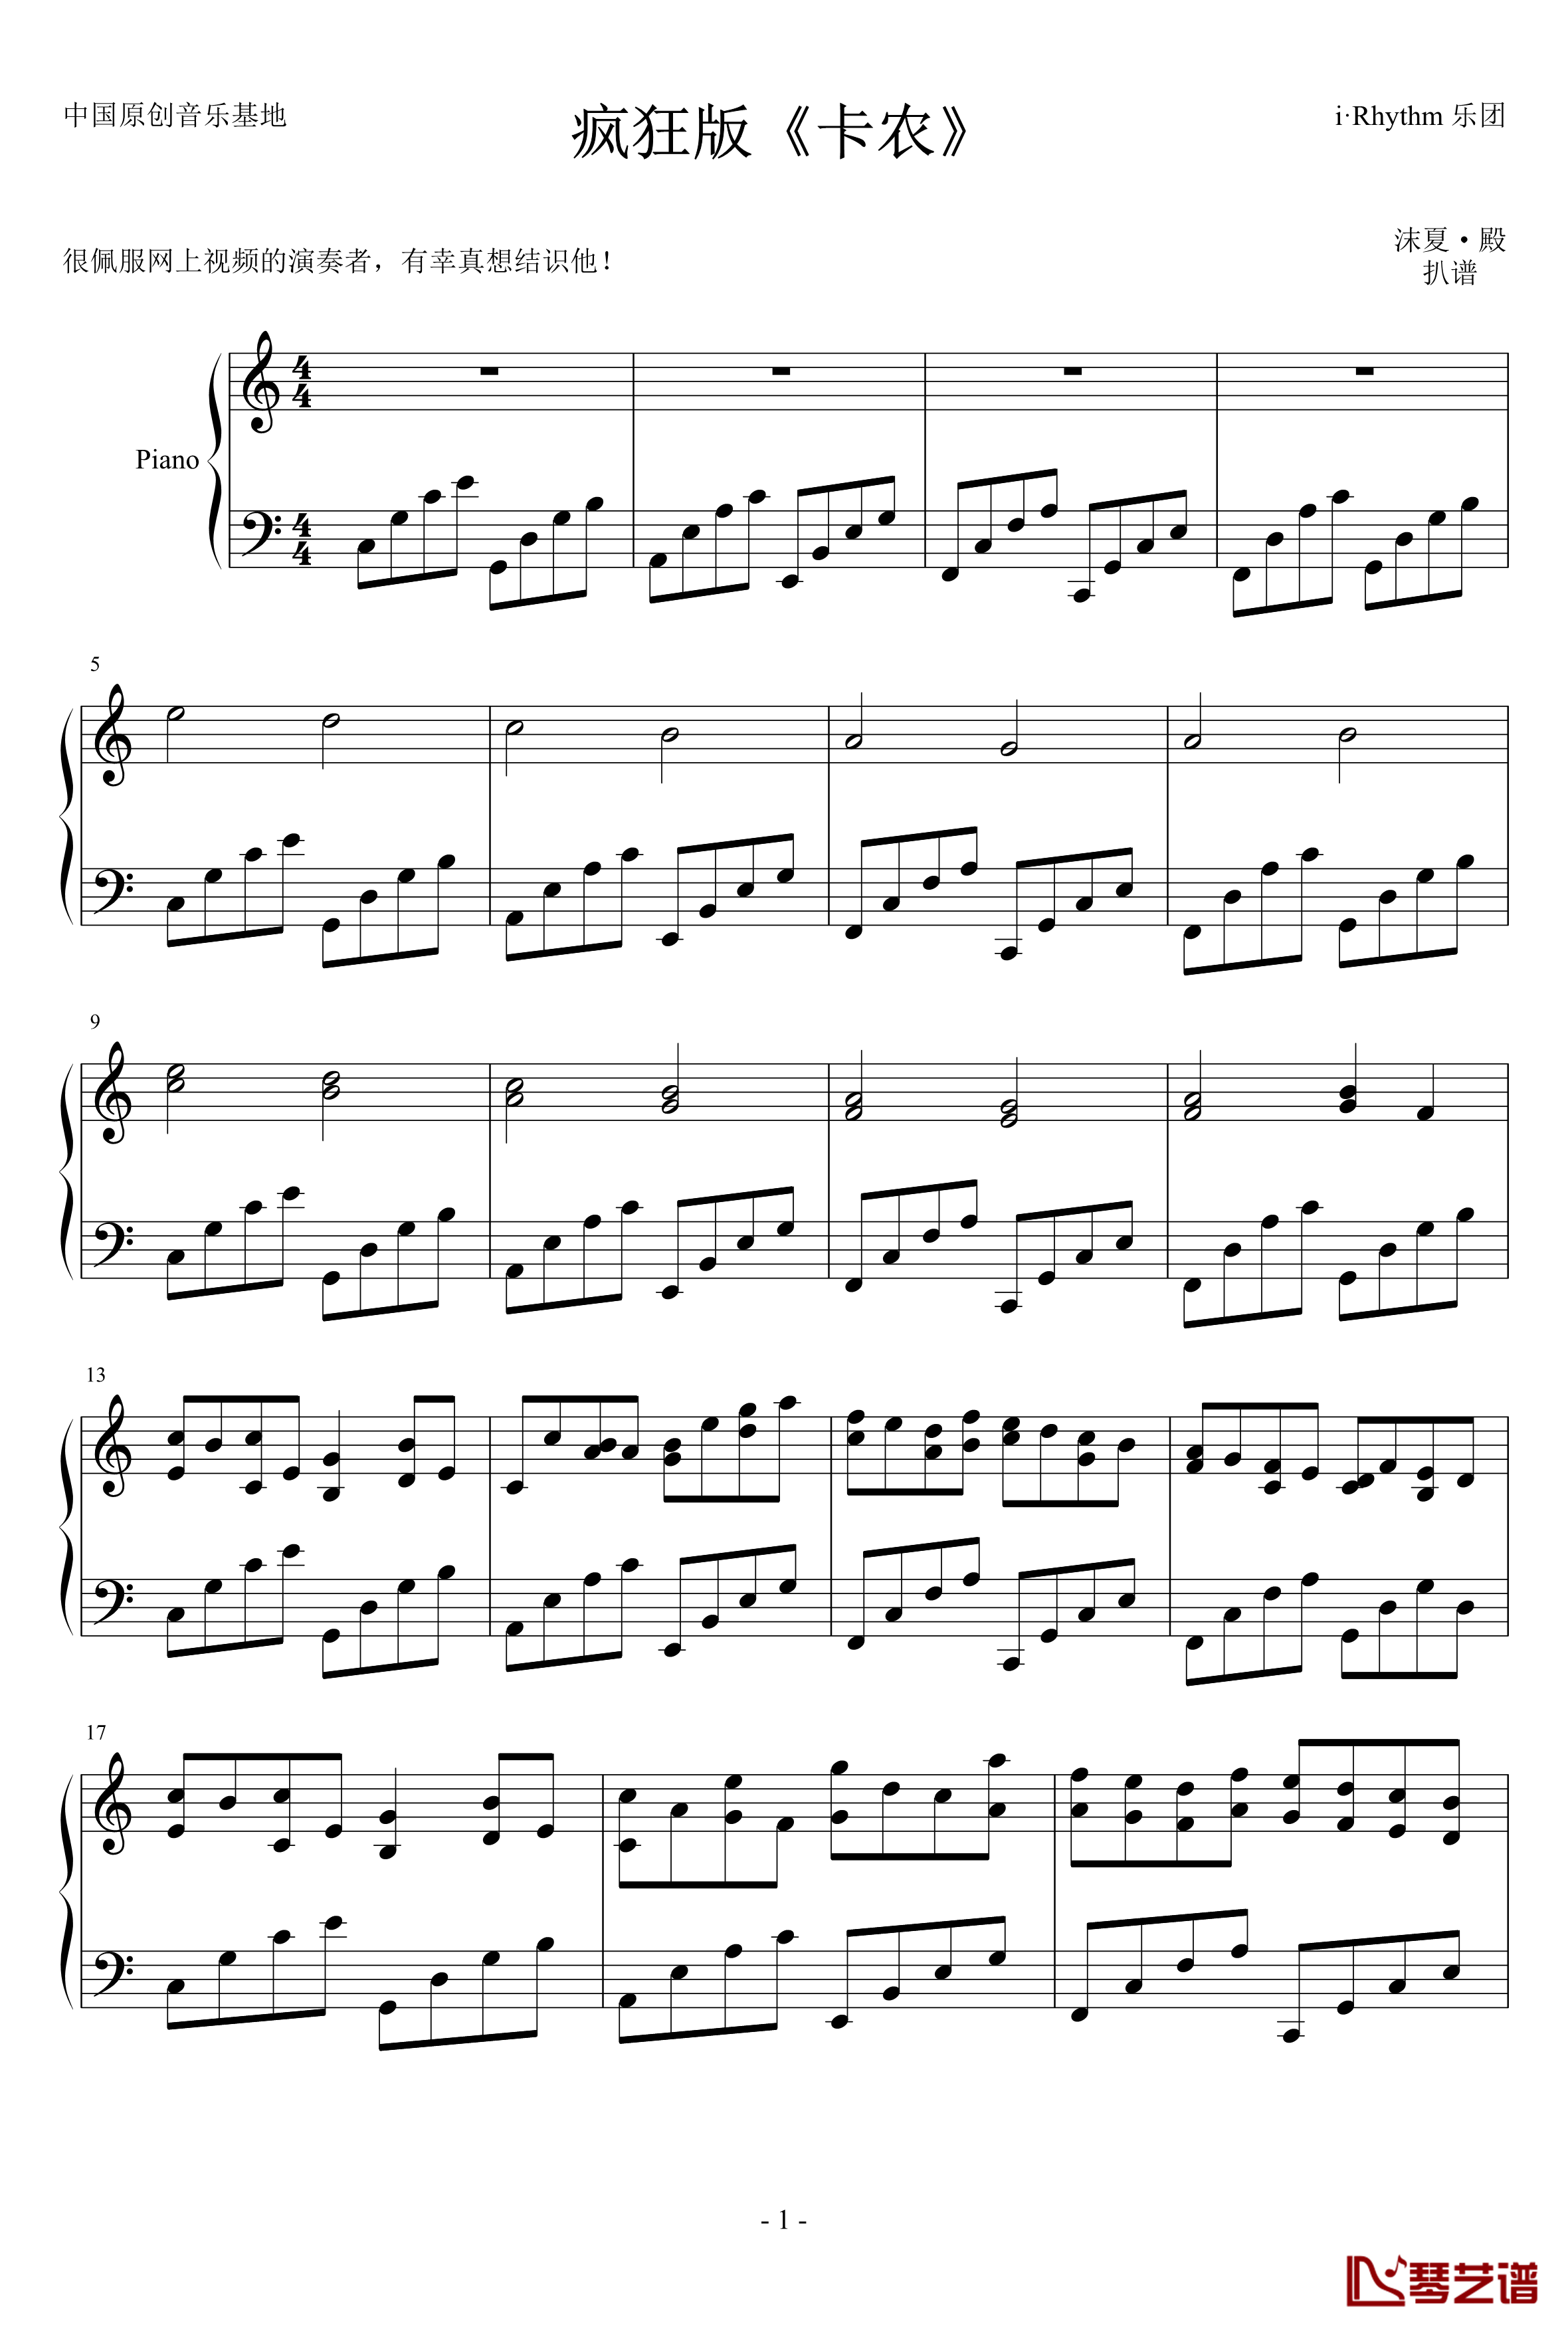 卡农钢琴谱-疯狂版-帕赫贝尔-Pachelbel1